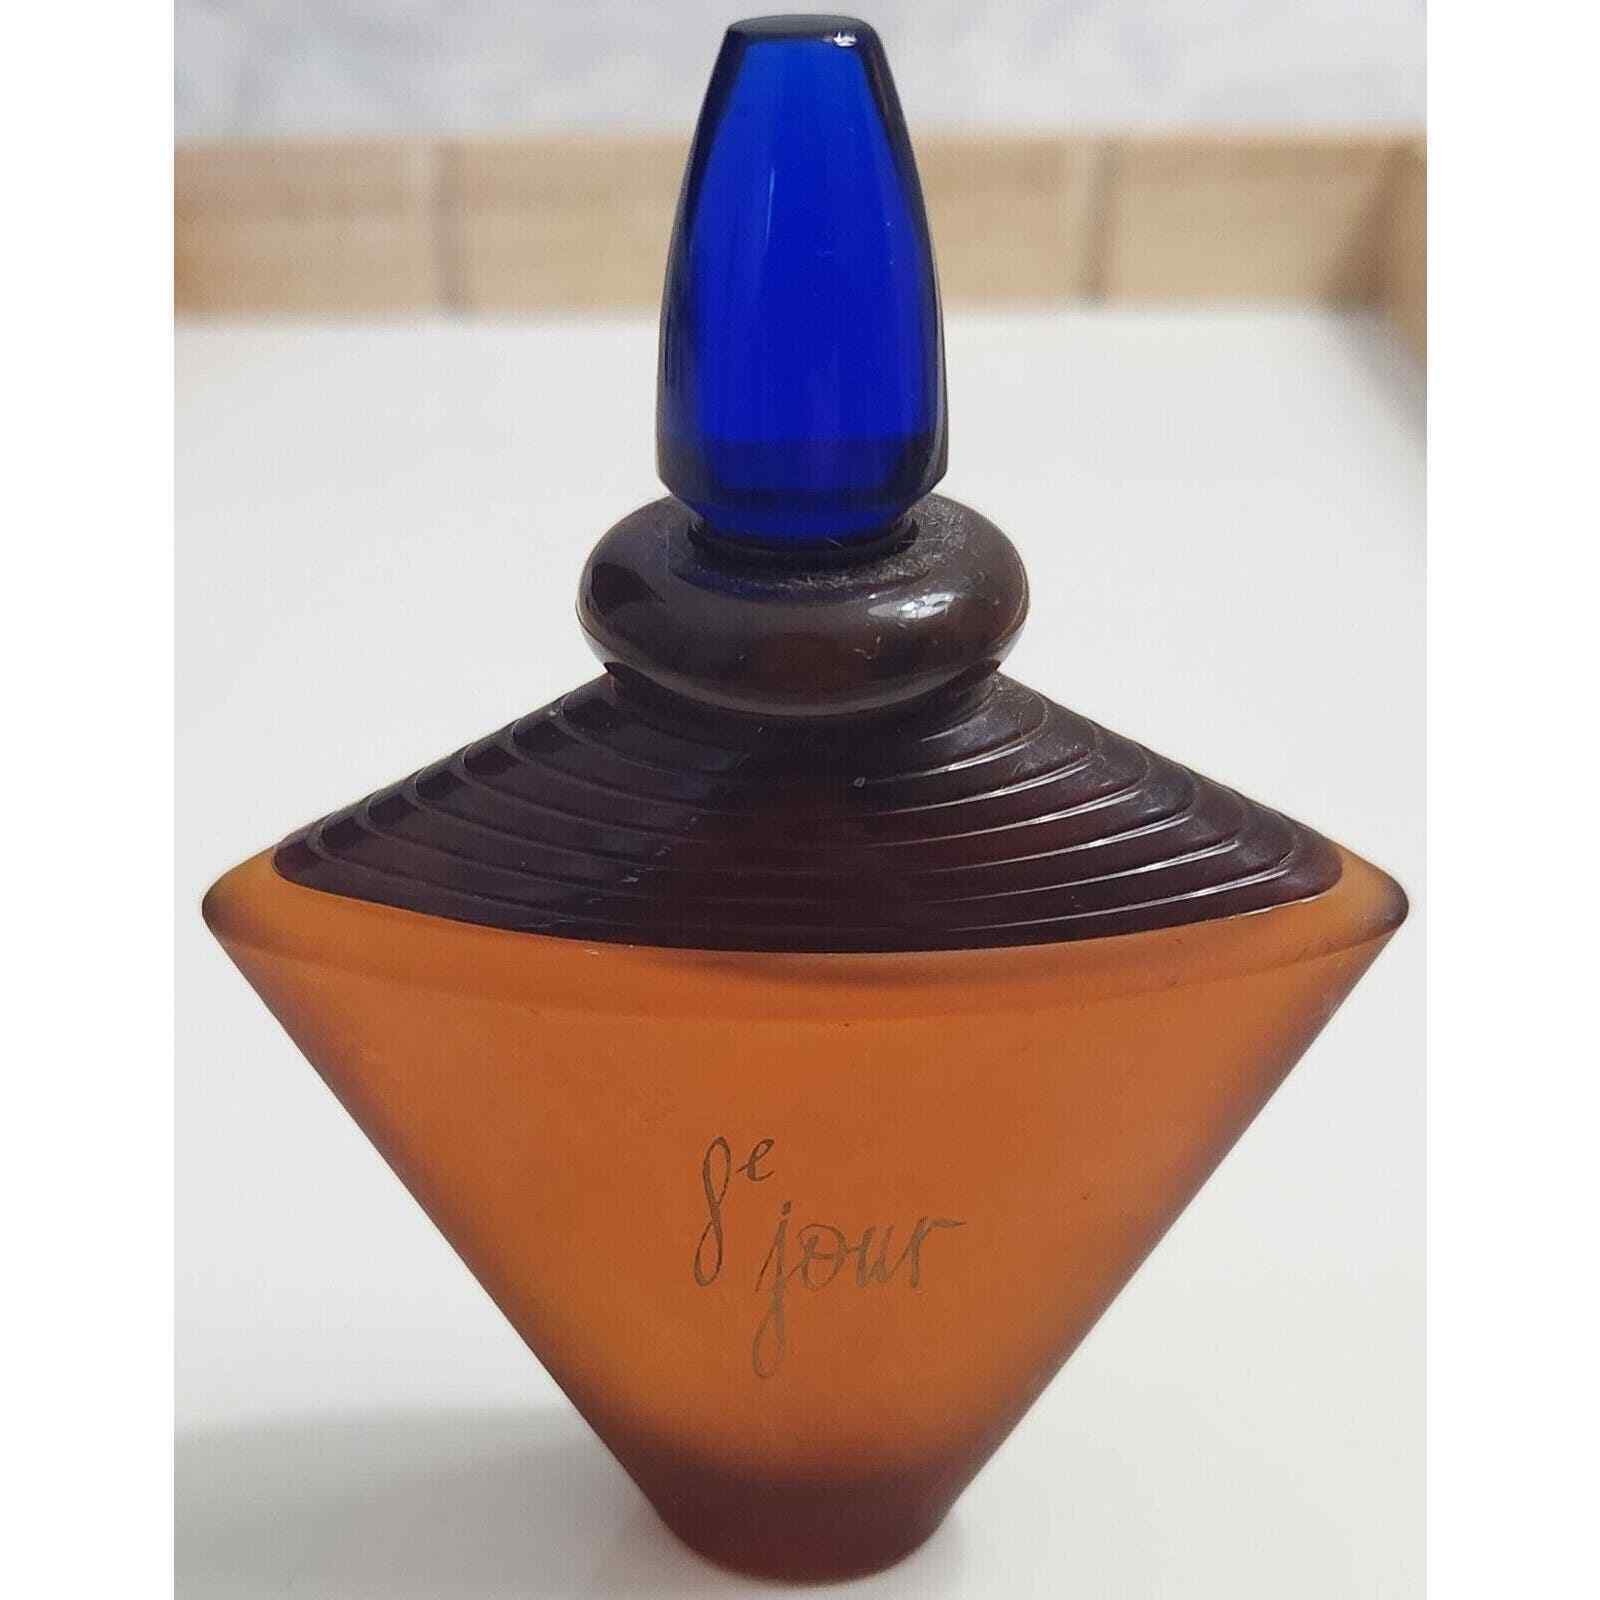  Yves Rocher de Jour Eau de Parfum Bottle 1.69 fl oz Full Vintage Perfume